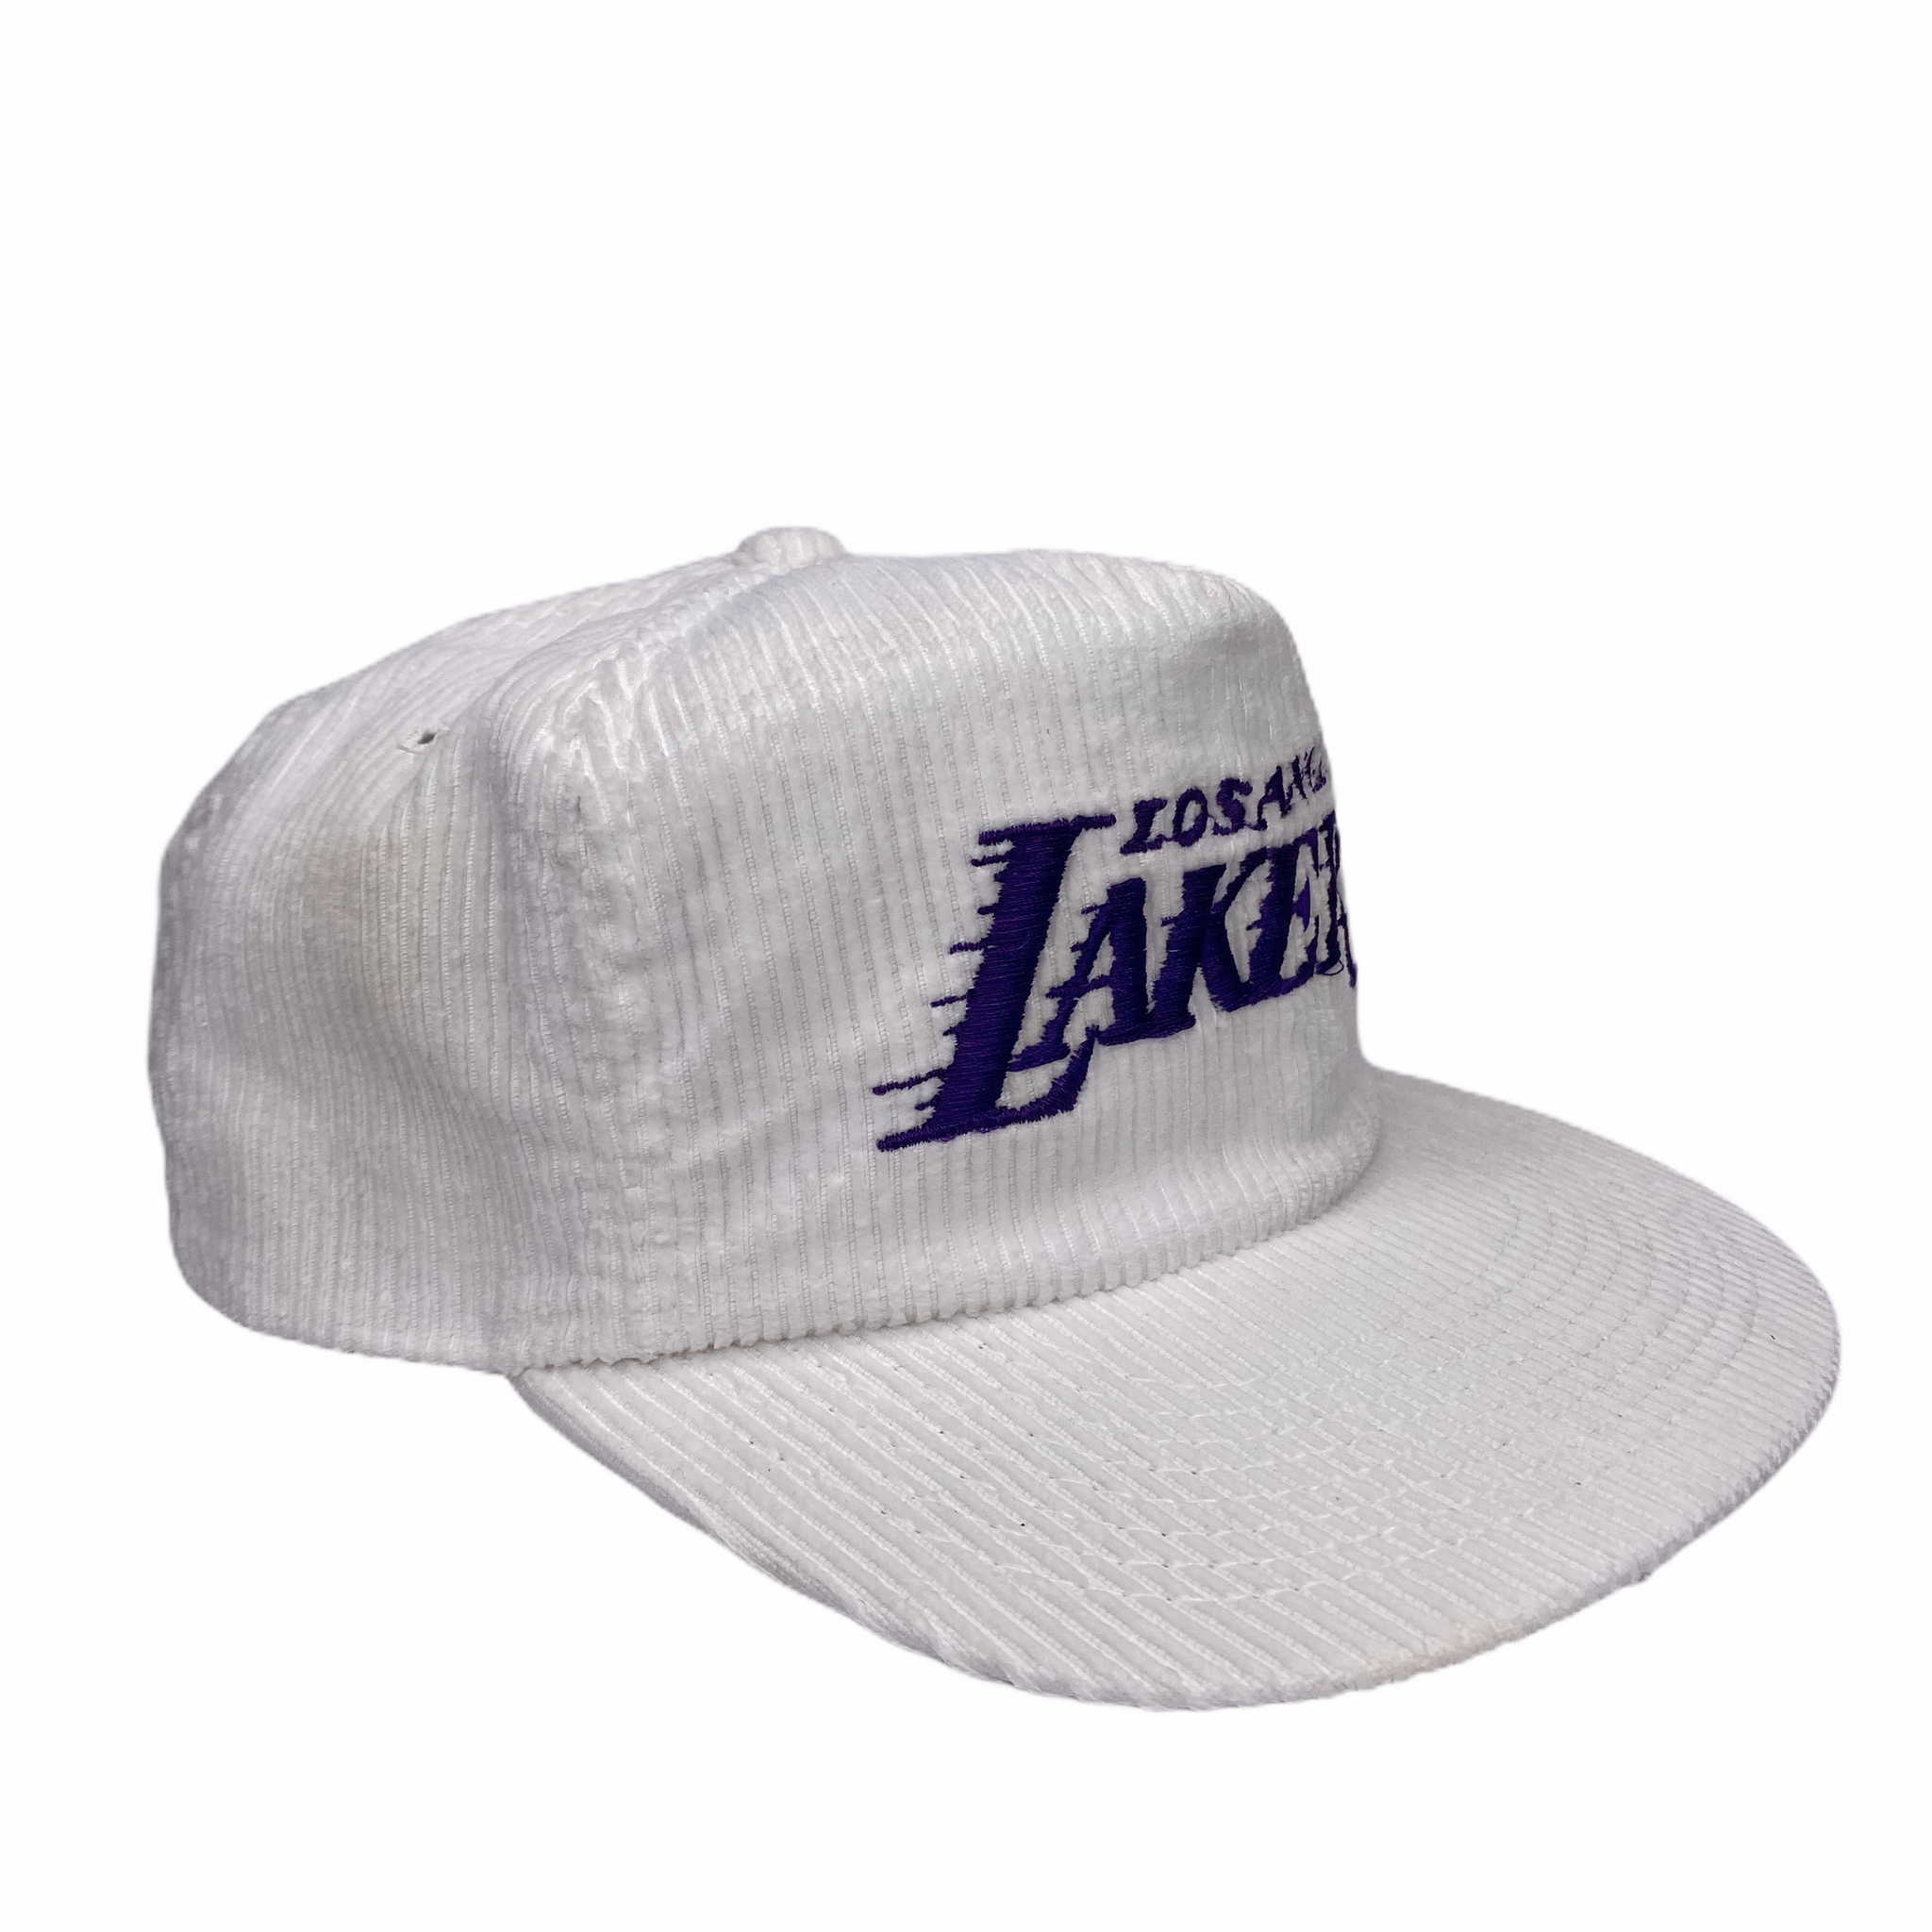 Vintage LA Los Angeles Lakers NBA Sports Specialties Corduroy